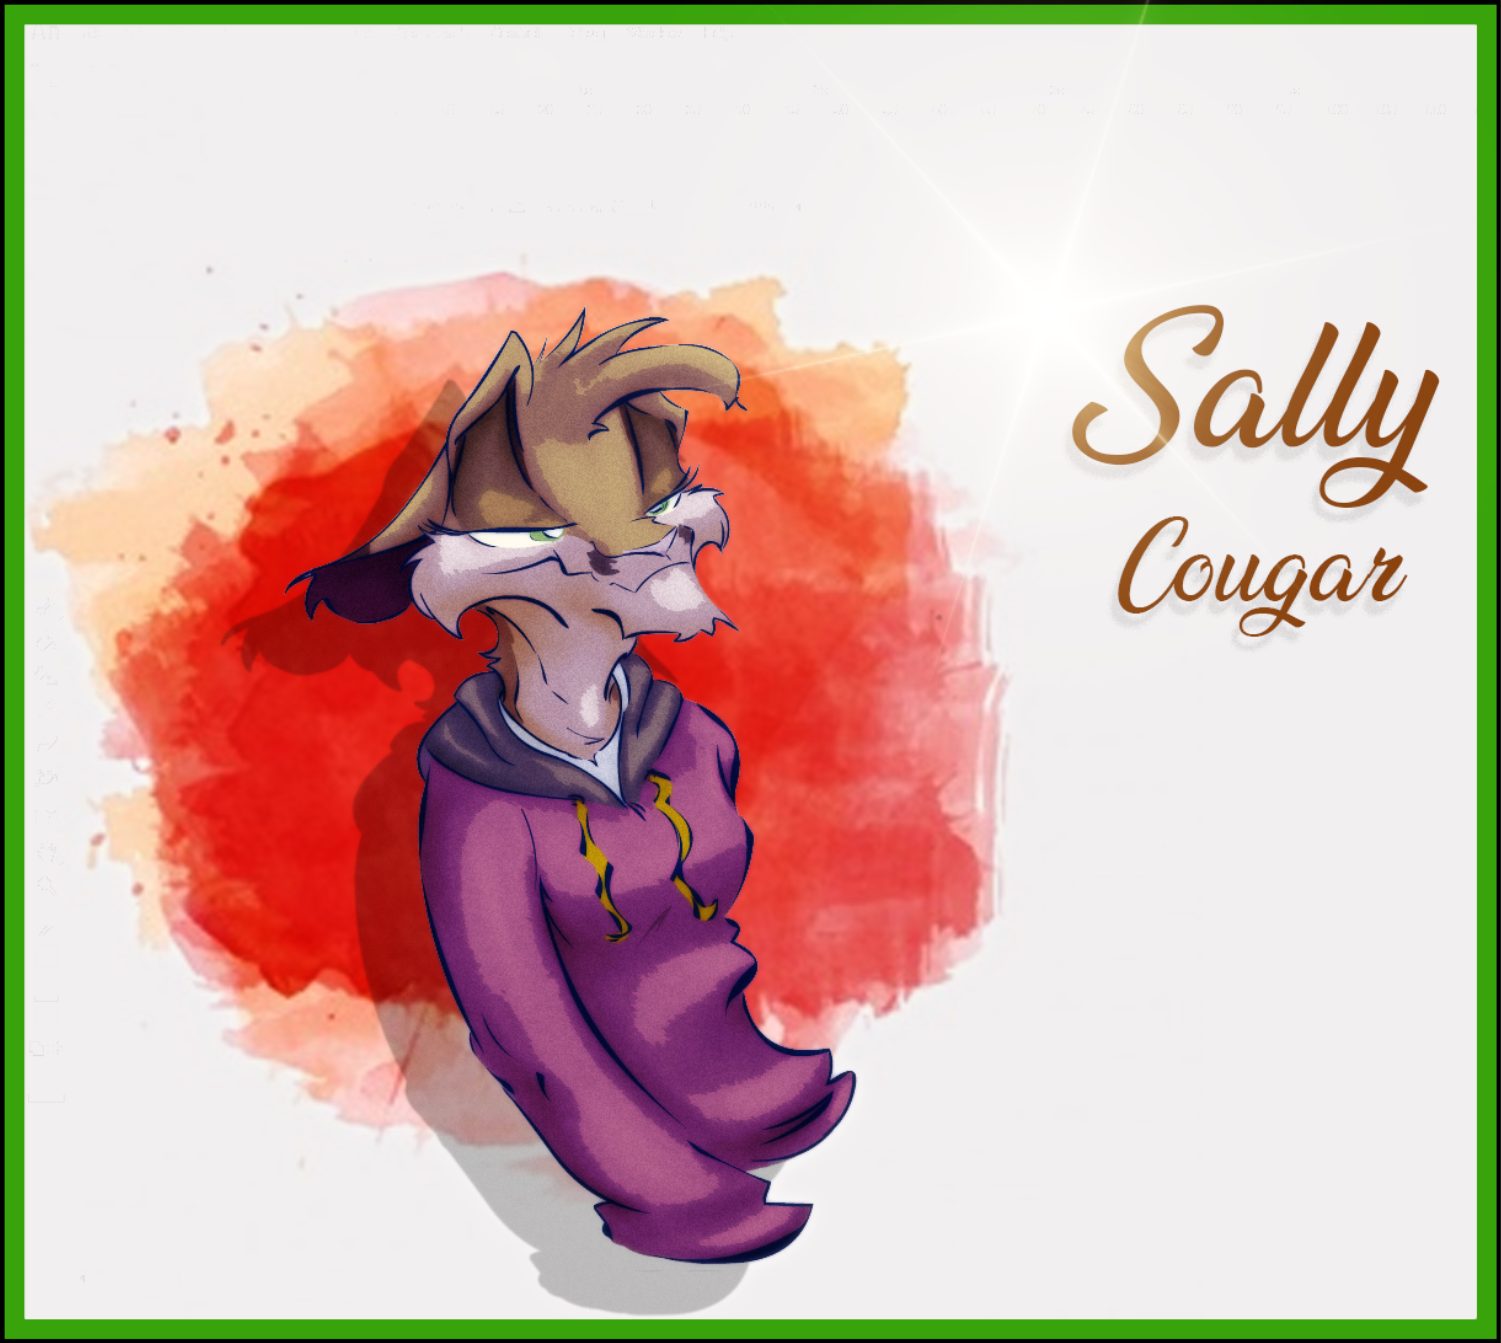 Sally Cougar